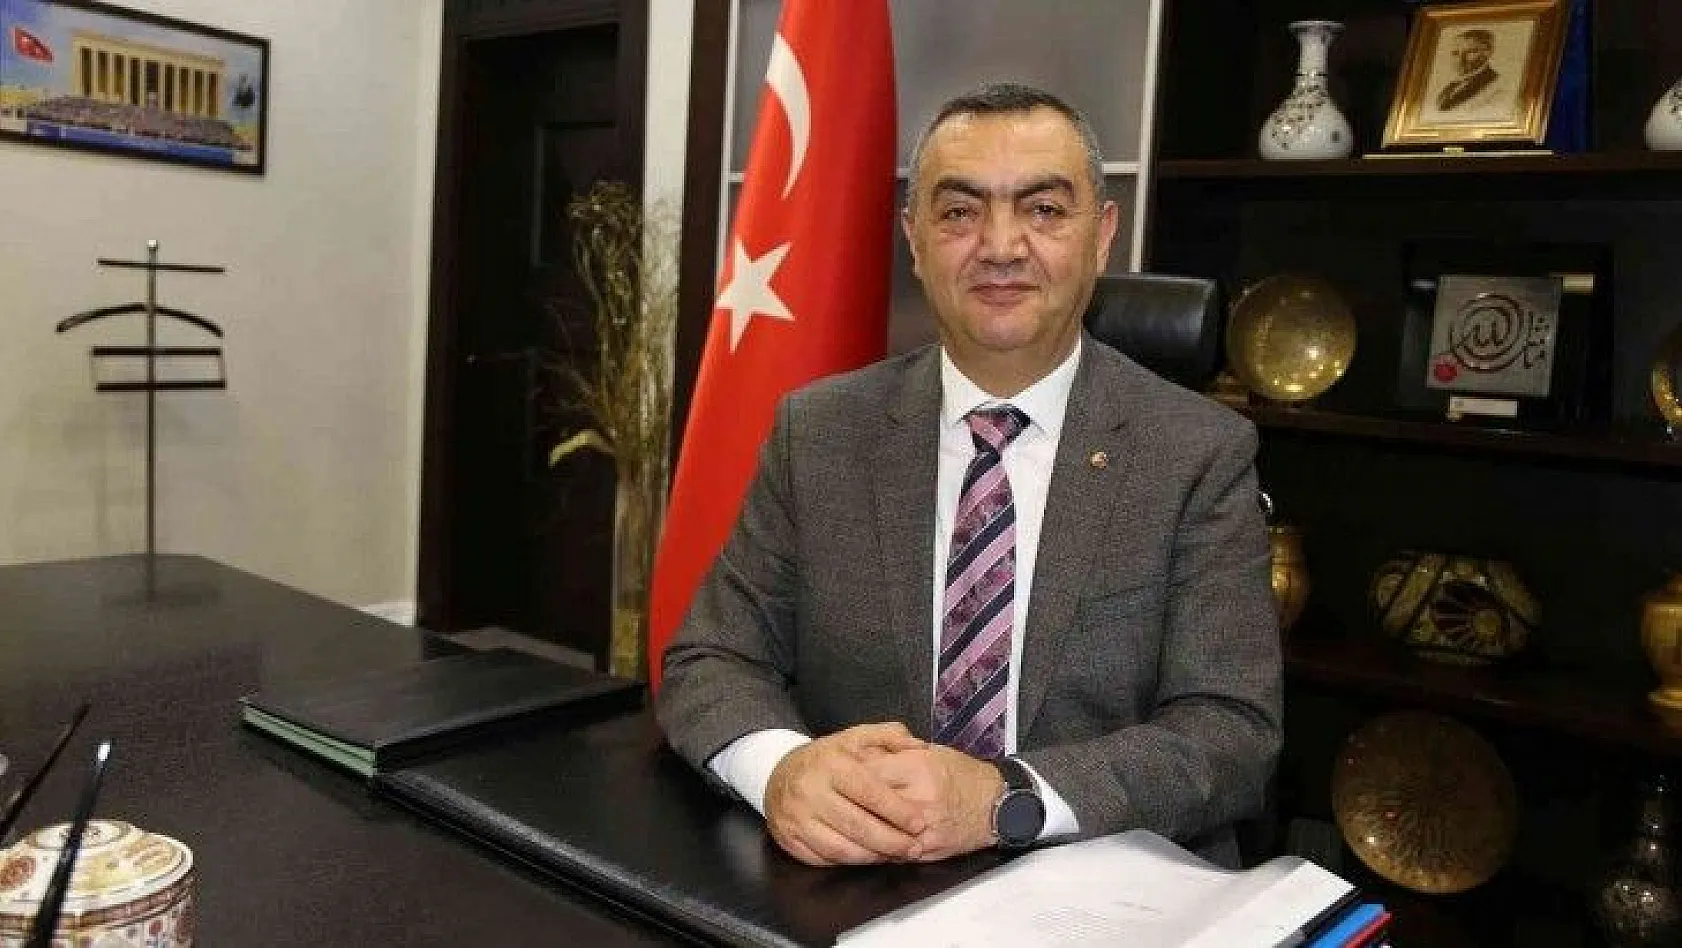 Büyüksimitci: 'Cumhuriyet ile Türk milleti hürriyet ve bağımsızlık içinde yaşama onuruna kavuşmuştur'